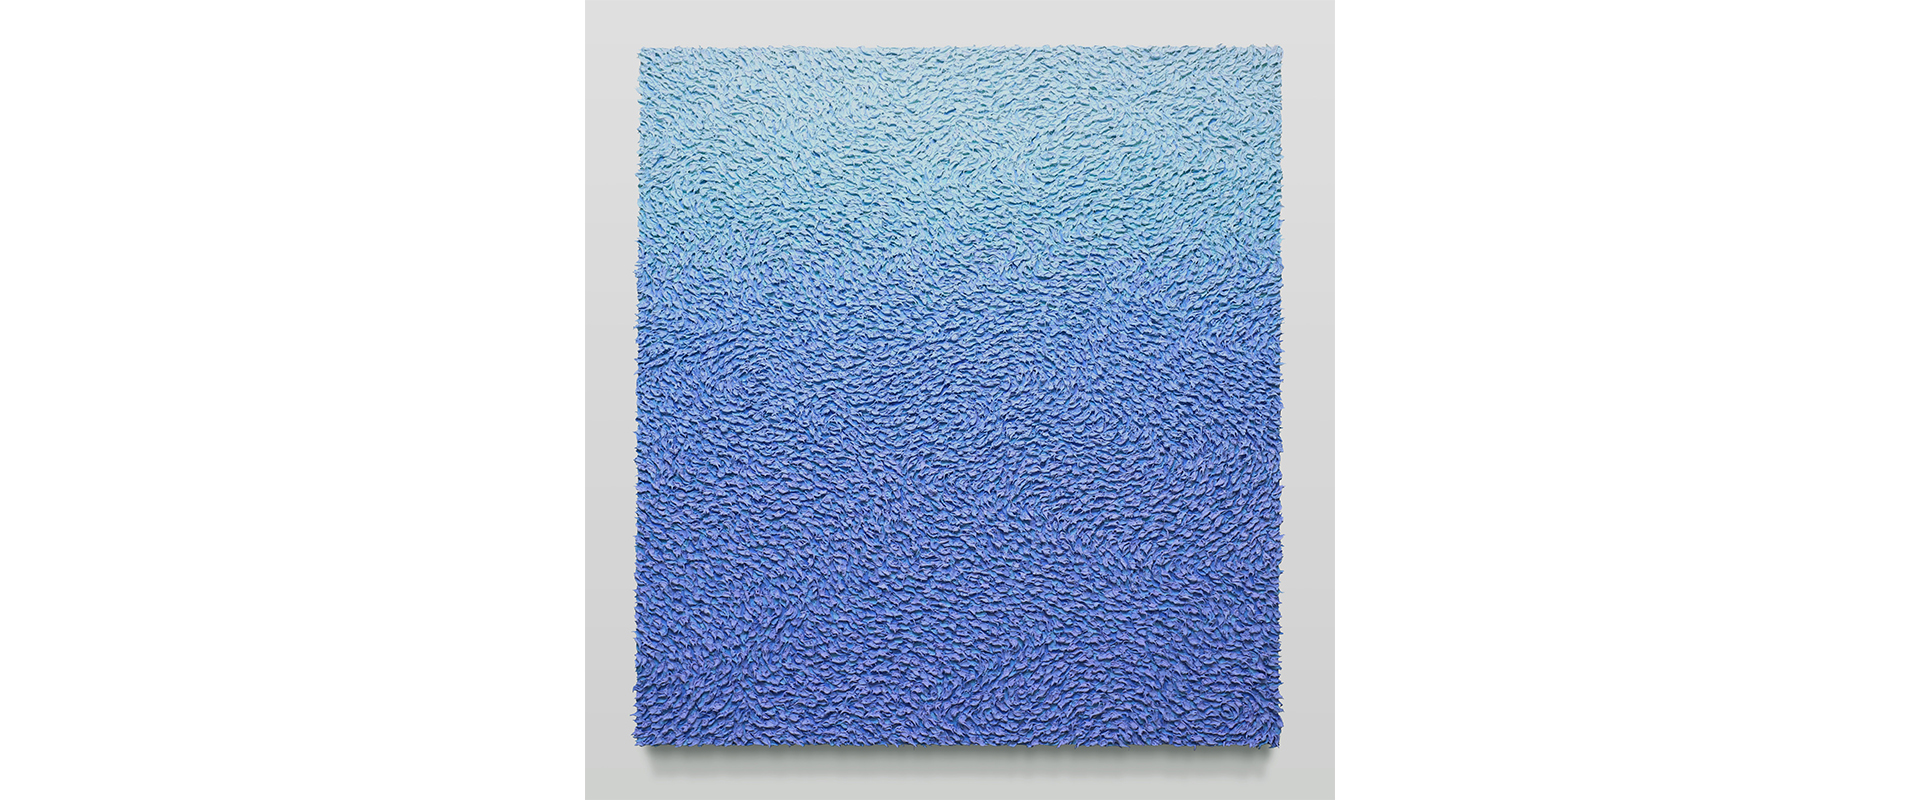 Robert Sagerman, “12,969” - 2021, Öl auf Leinwand, 99 x 89 cm